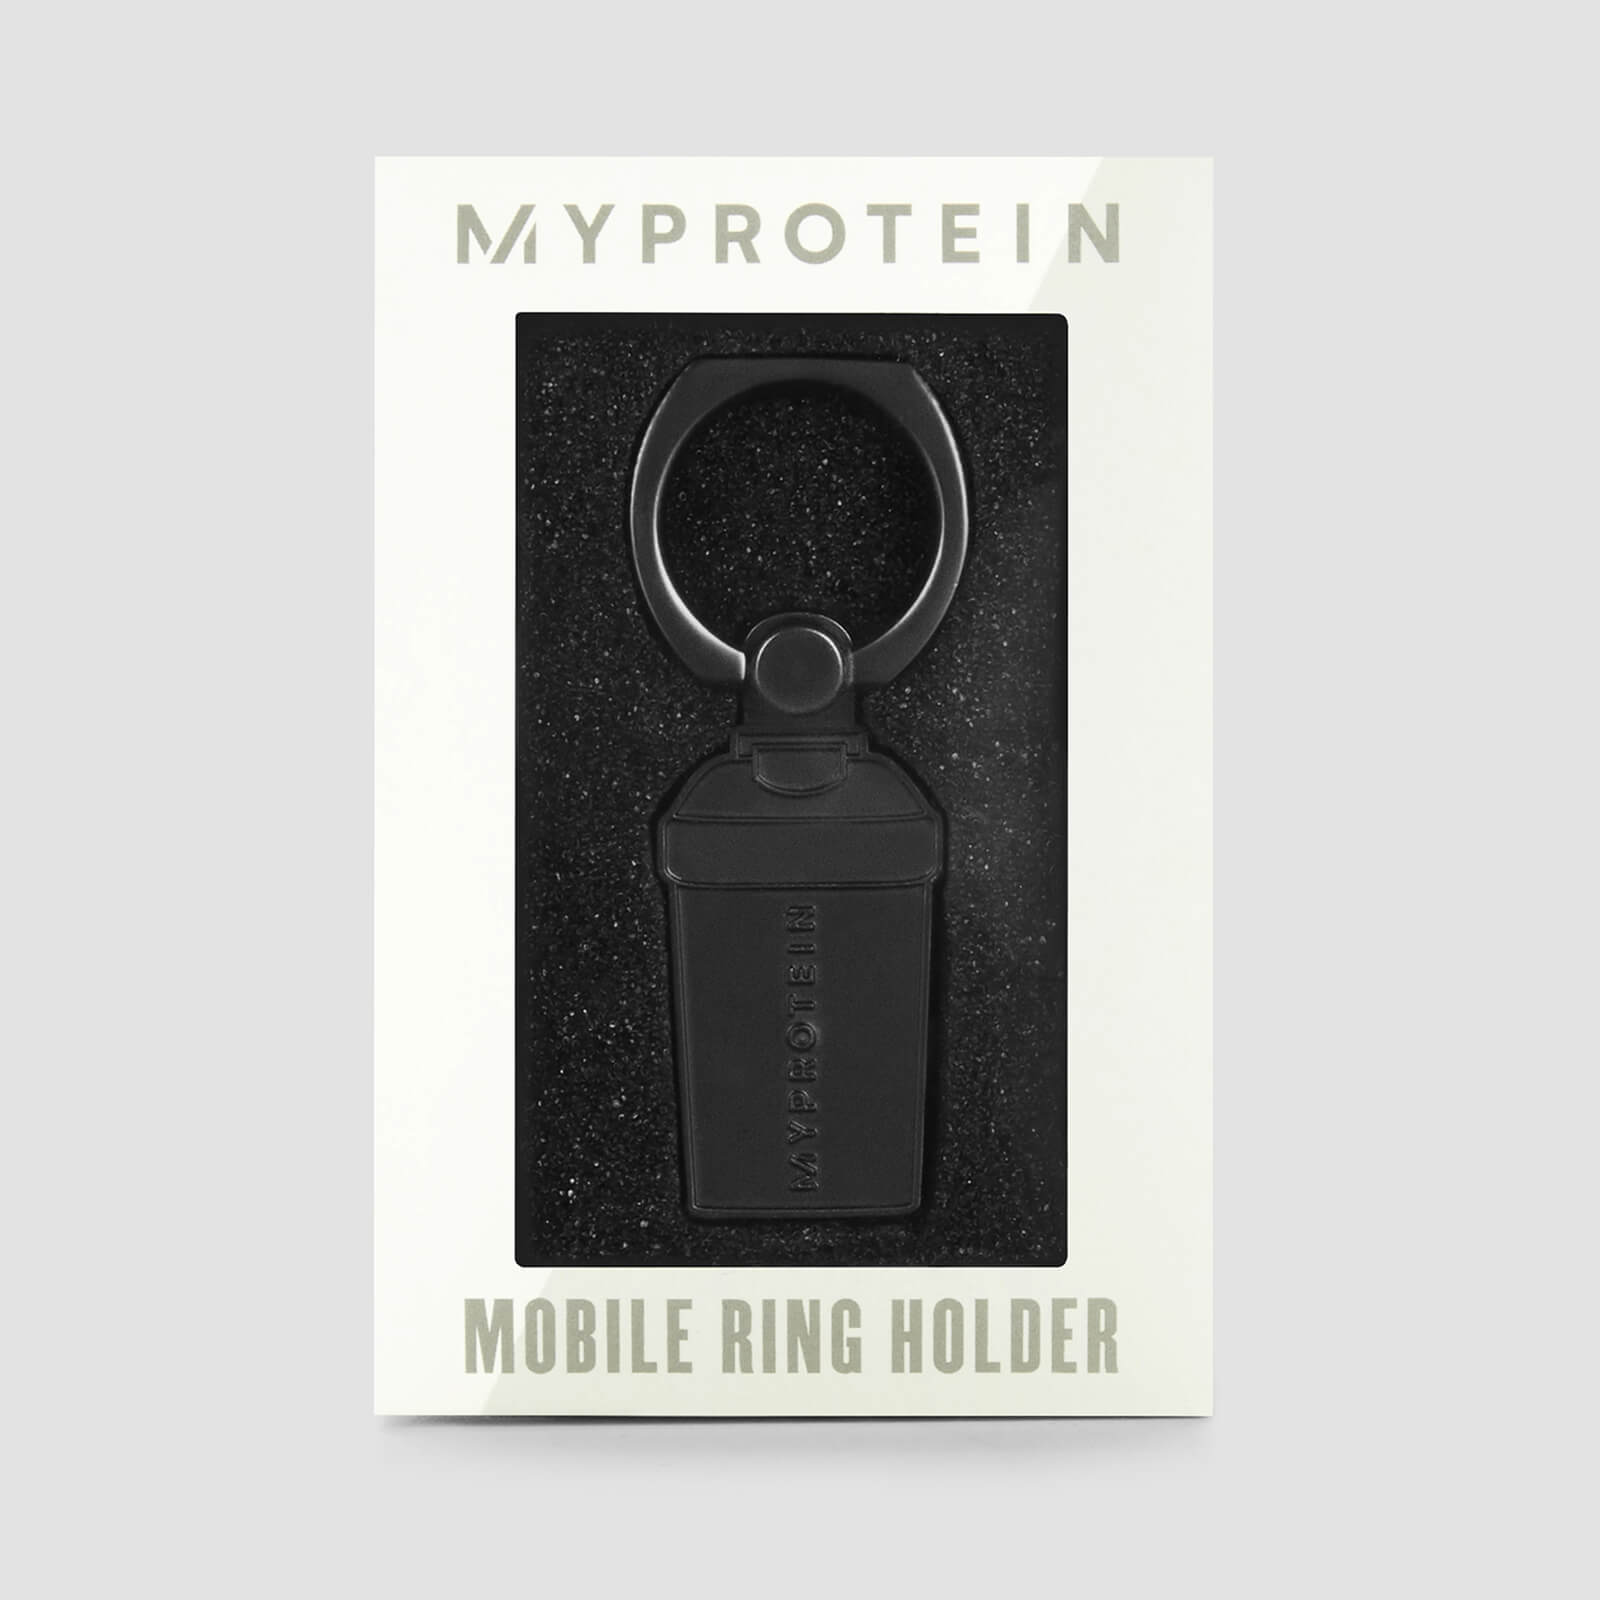 Myprotein 限量版手機環 - 金屬灰